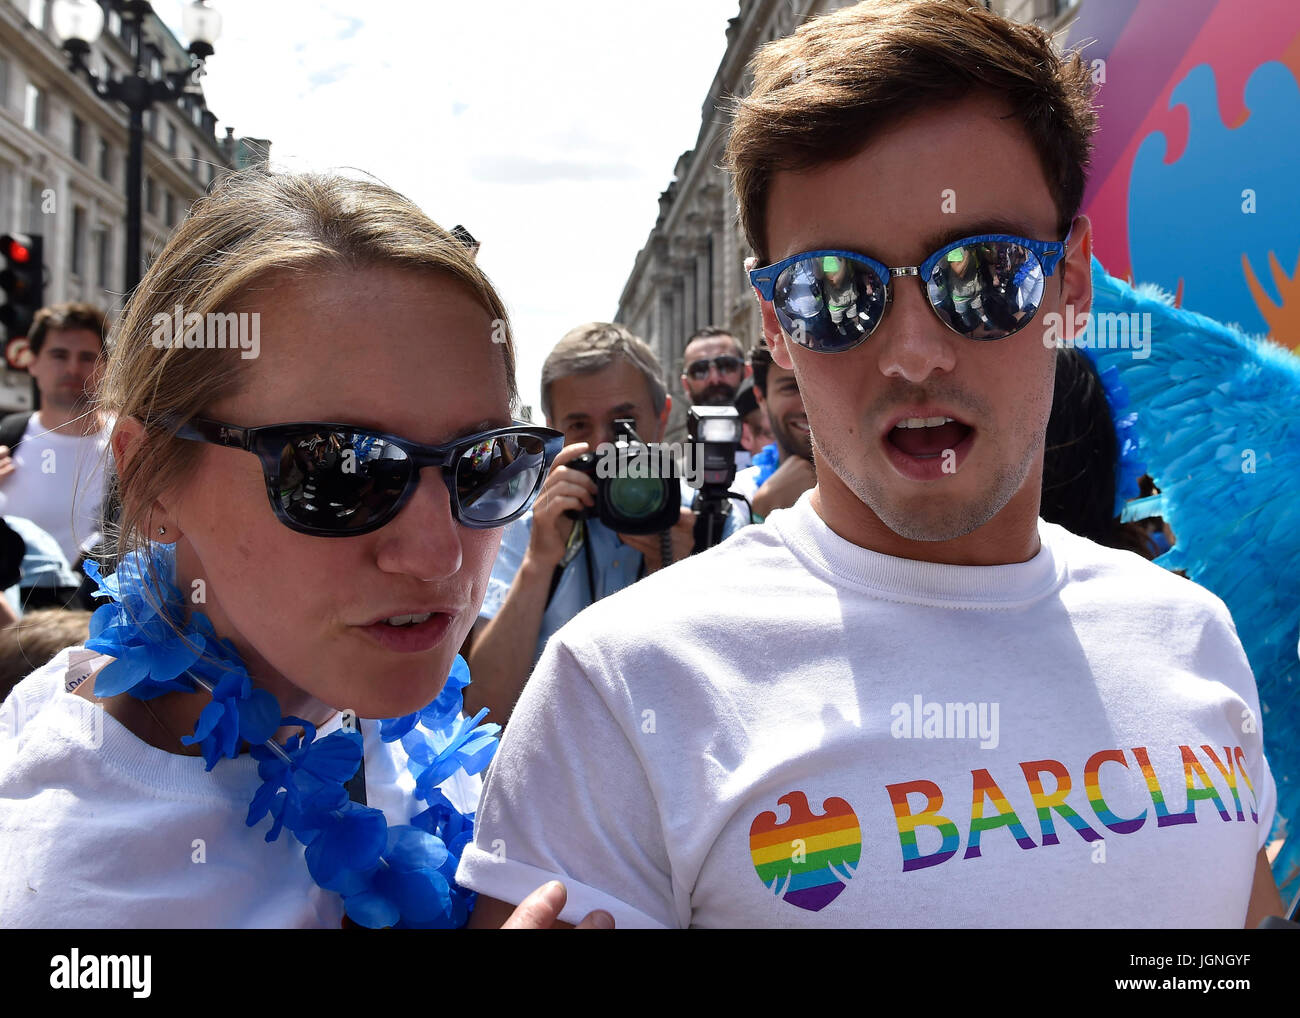 Londres, Reino Unido. 08 de julio, 2017. Tom Daley plantea para los medios de comunicación durante el orgullo en Londres el sábado. Foto : G Taka Taka Crédito: Wu Wu/Alamy Live News Foto de stock